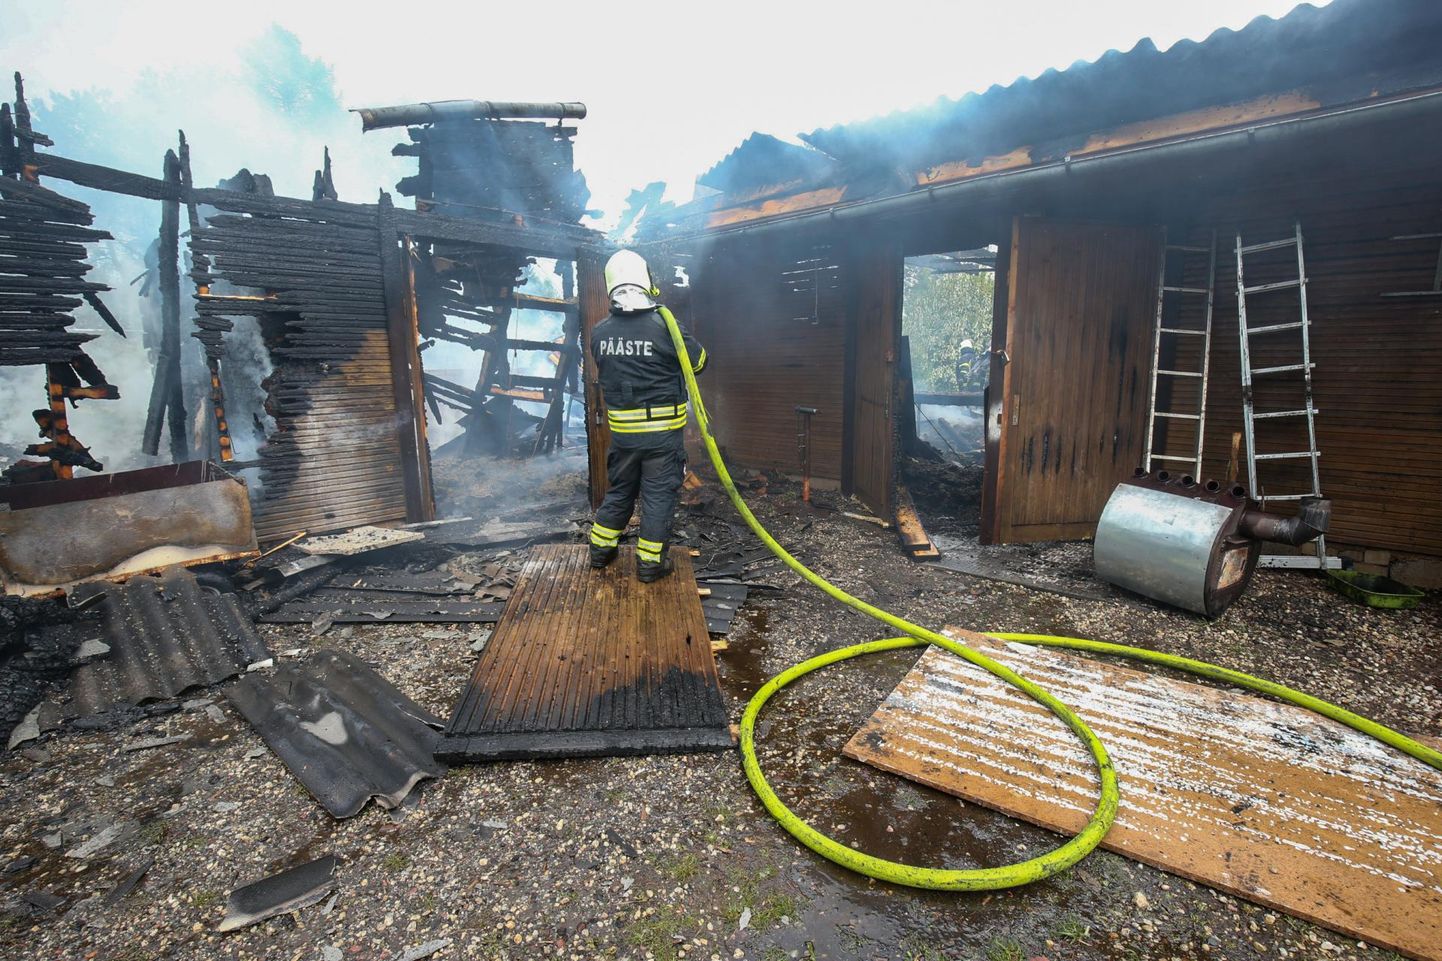 Päästeamet sai eelmisel aastal Viljandimaal 1089 väljakutset, neist 147 tulekahjule. Pilt on tehtud 16. mail Mustlas.